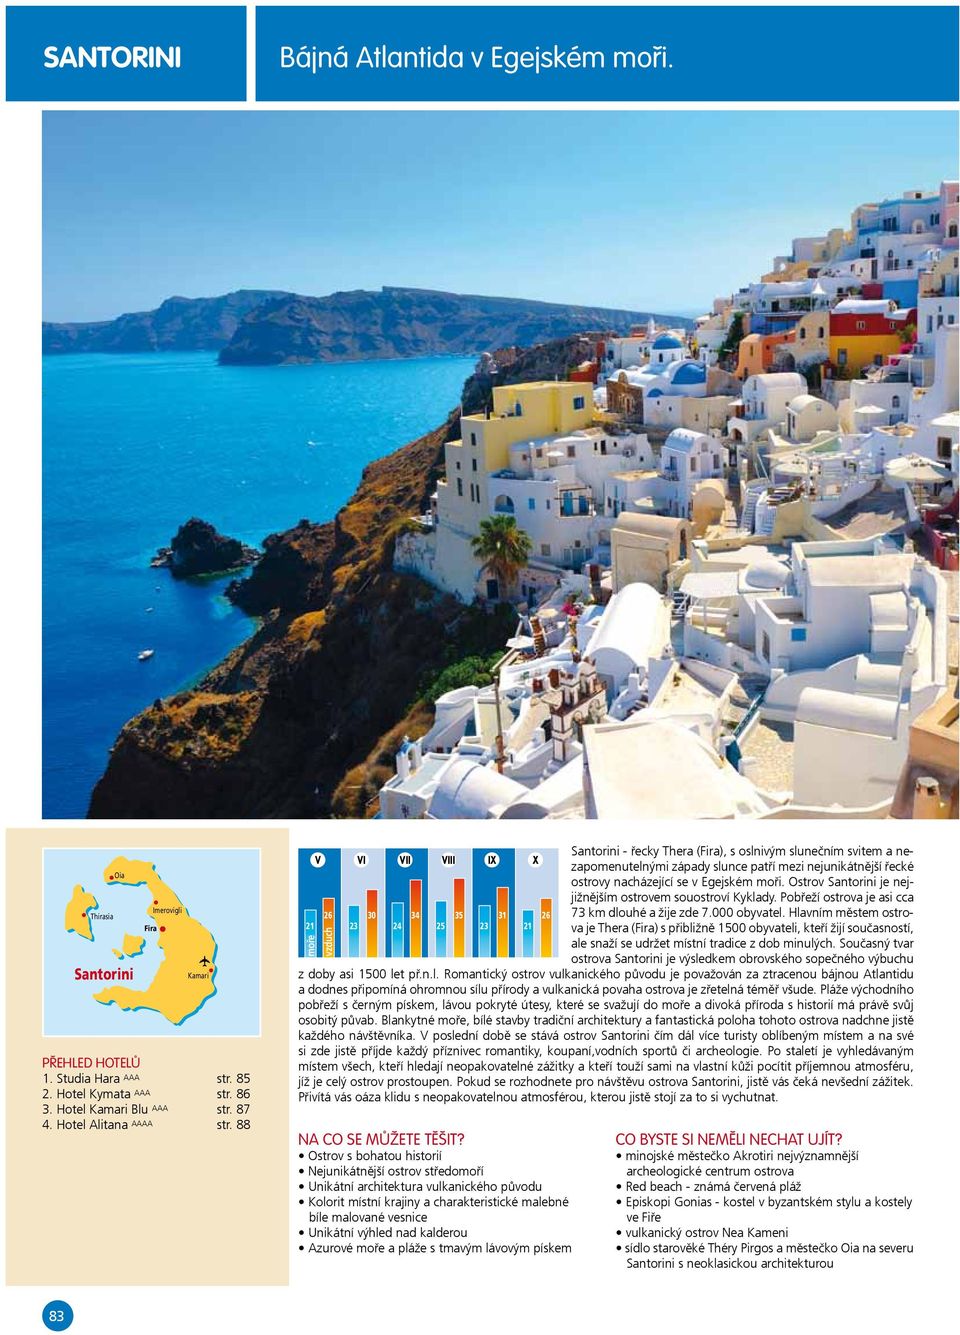 88 V VI VII VIII IX X Santorini - řecky Thera (Fira), s oslnivým slunečním svitem a nezapomenutelnými západy slunce patří mezi nejunikátnější řecké ostrovy nacházející se v Egejském moři.